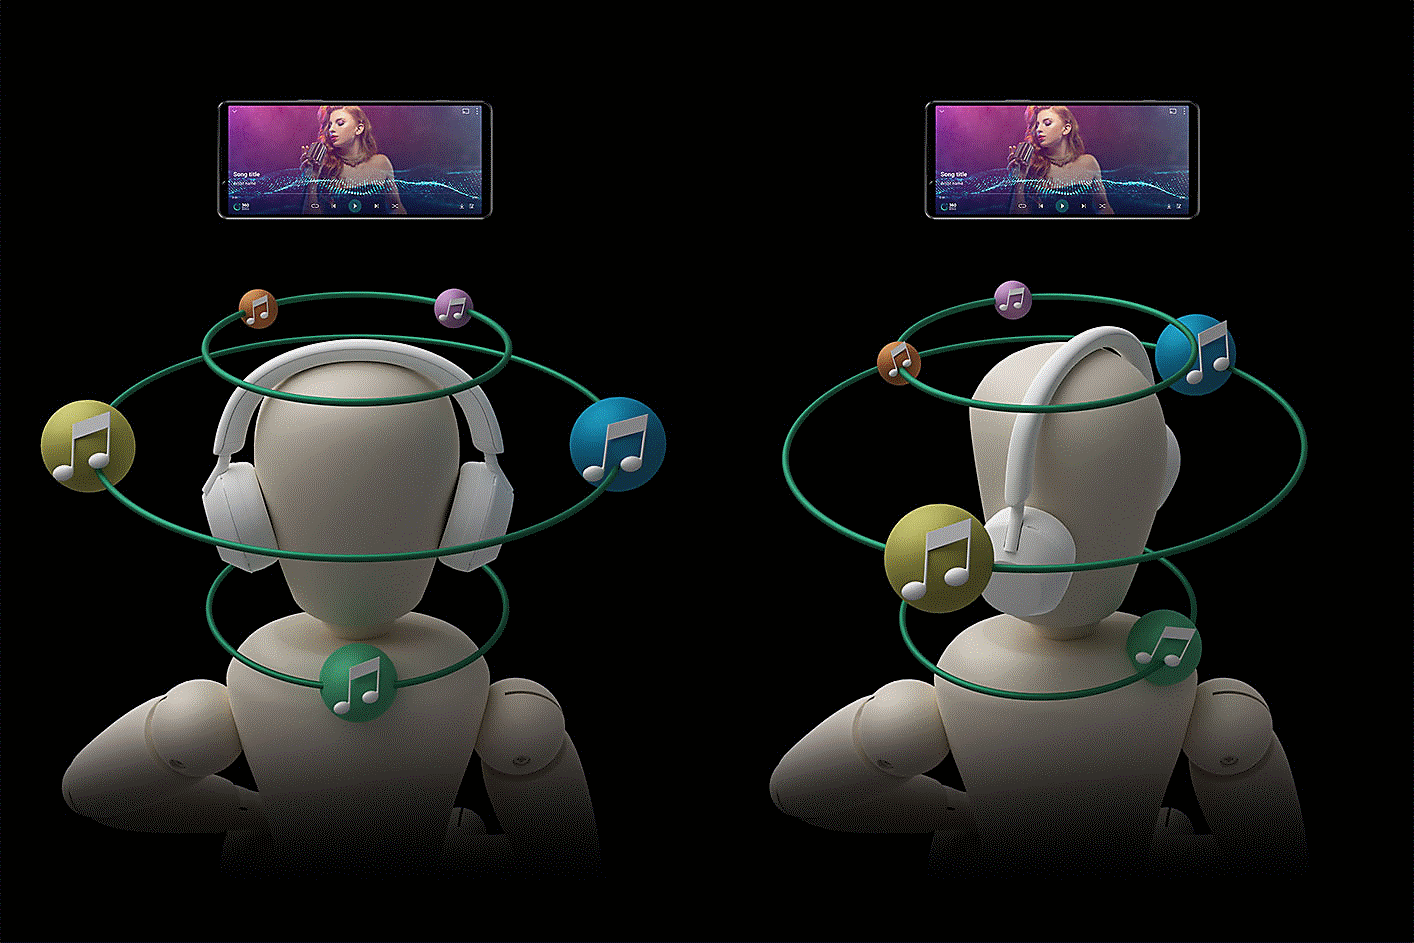 Két fejhallgatót viselő ember hangbuborékokkal körülvéve. A bal oldali ember egyenesen néz, a jobb oldali elfordítja a fejét, és a hangbuborékok is vele fordulnak